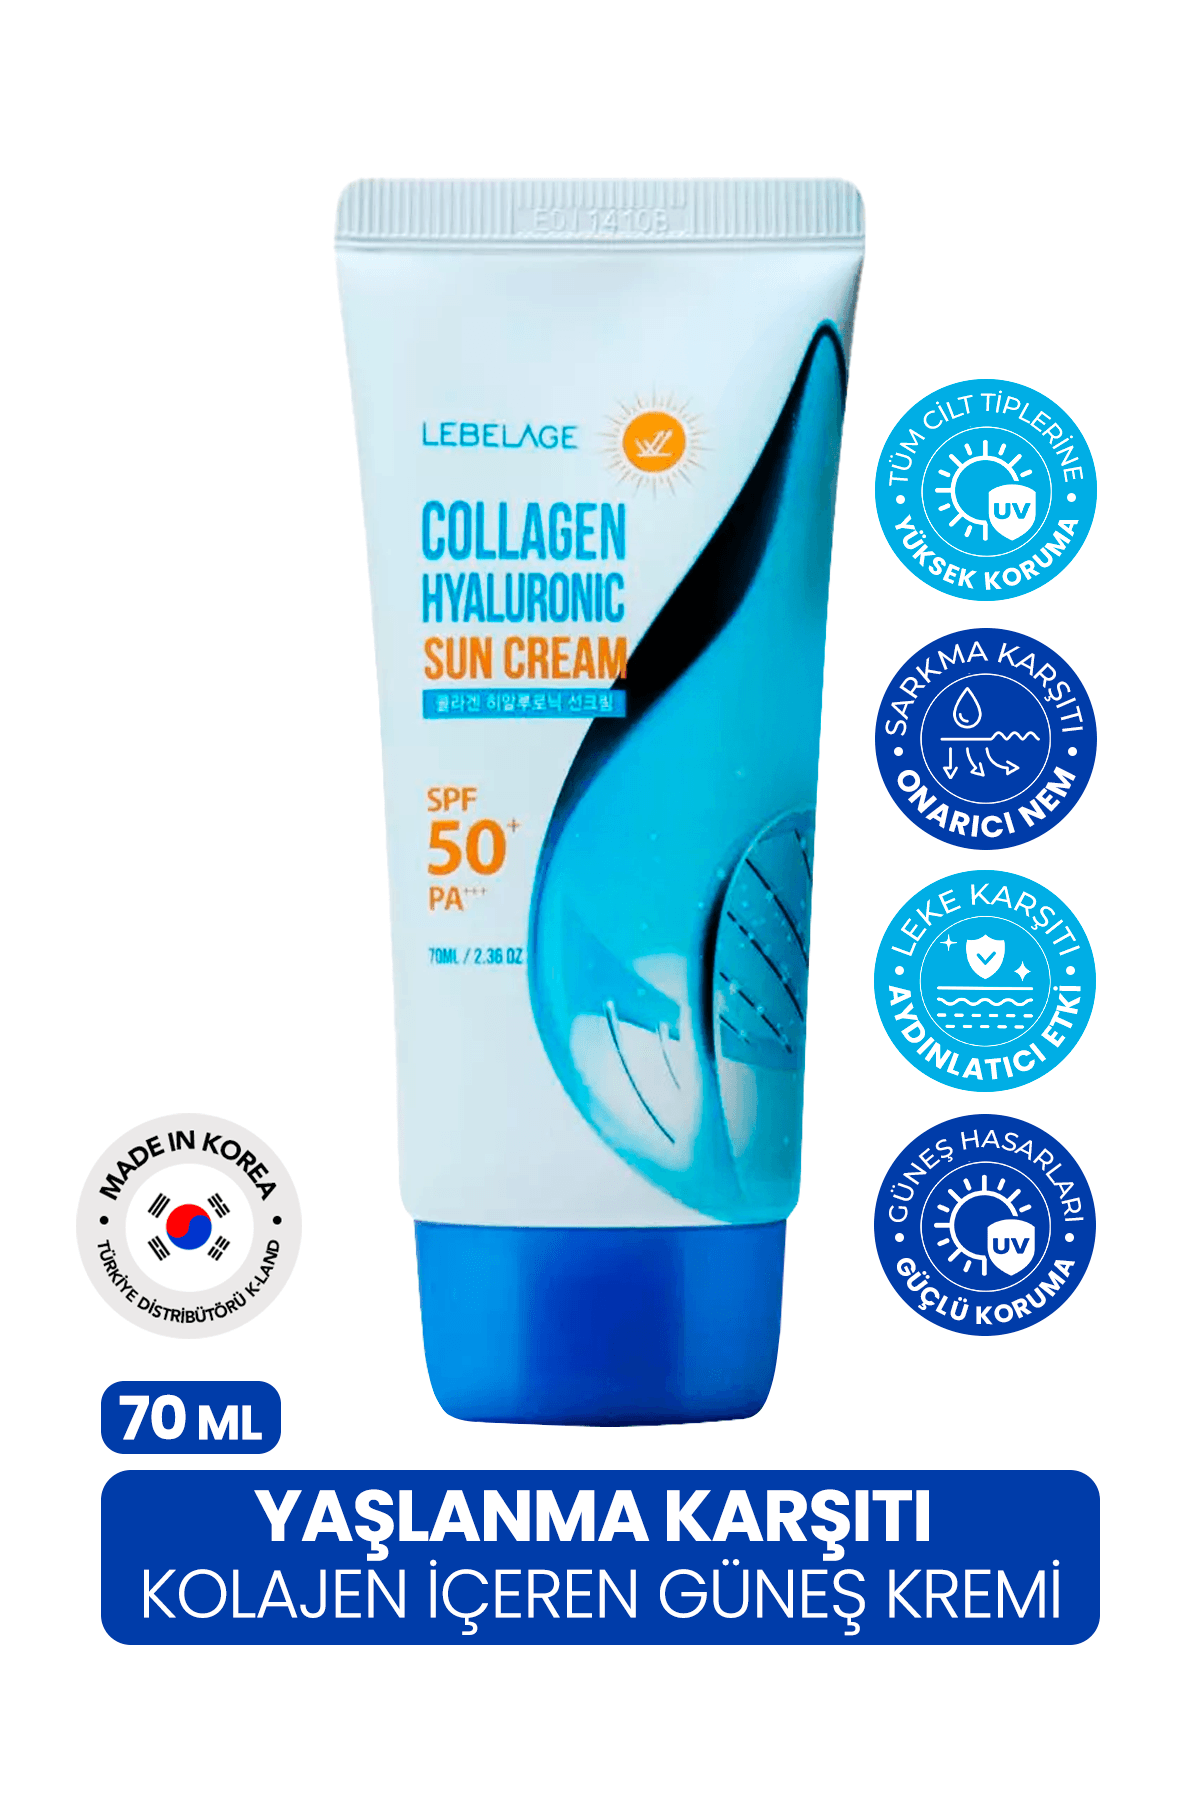 Yaşlanma Karşıtı Kolajen Güneş Kremi Spf 50 + Pa +++ Collagen Hyaluronic Sun Cream